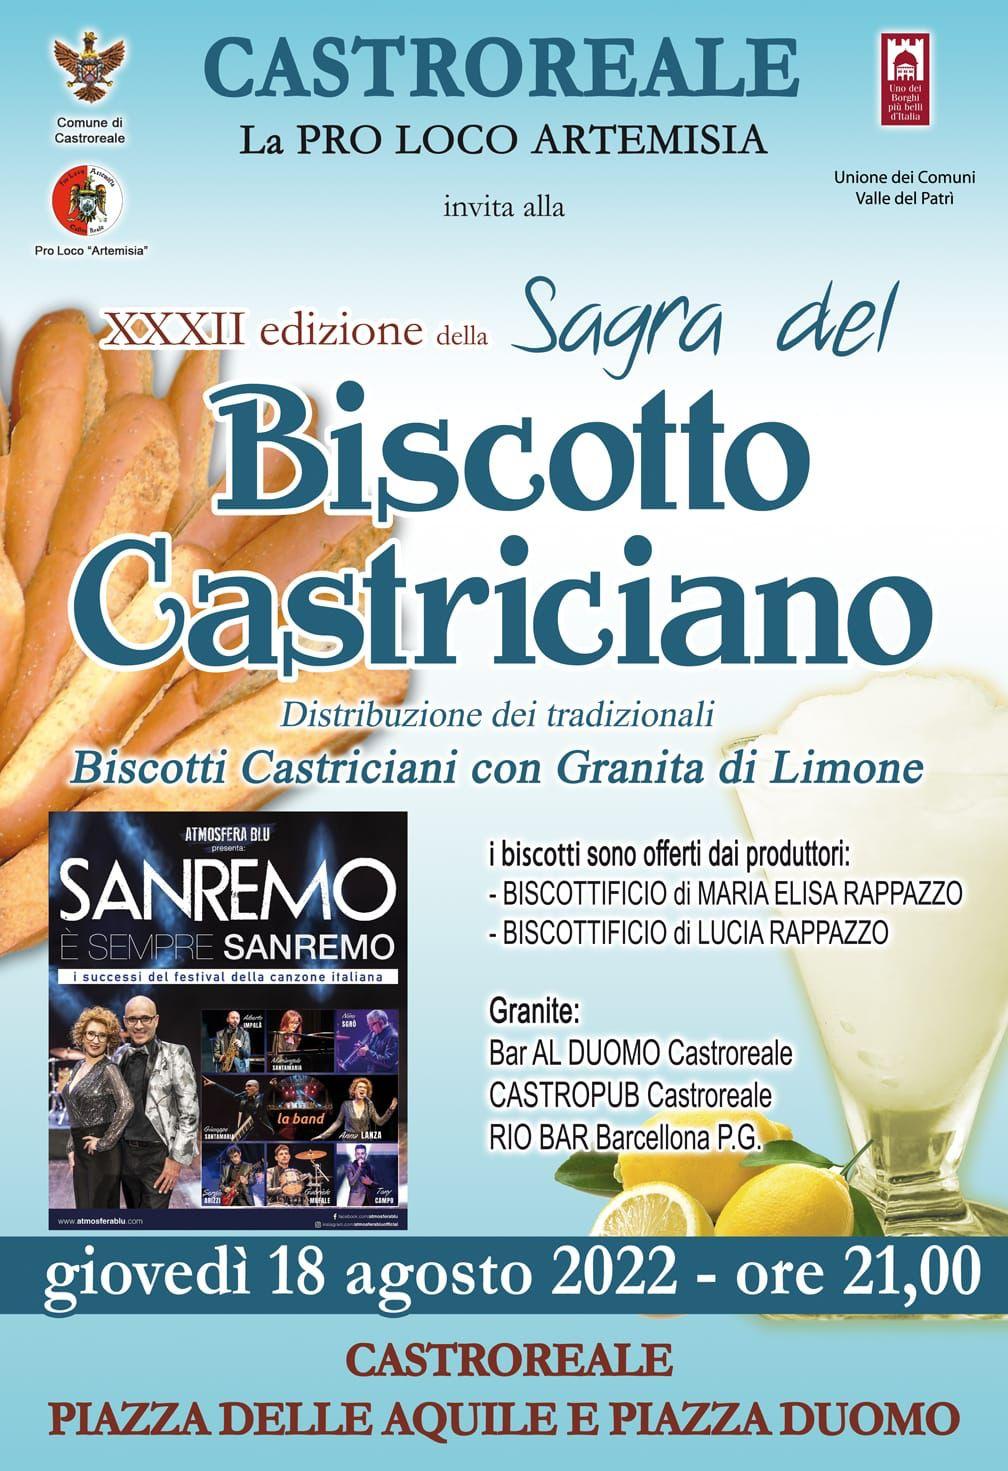 A Castroreale giovedì 18 agosto alle 21, con la partecipazione di “Atmosfera Blu”  XXXII Sagra del Biscotto castriciano